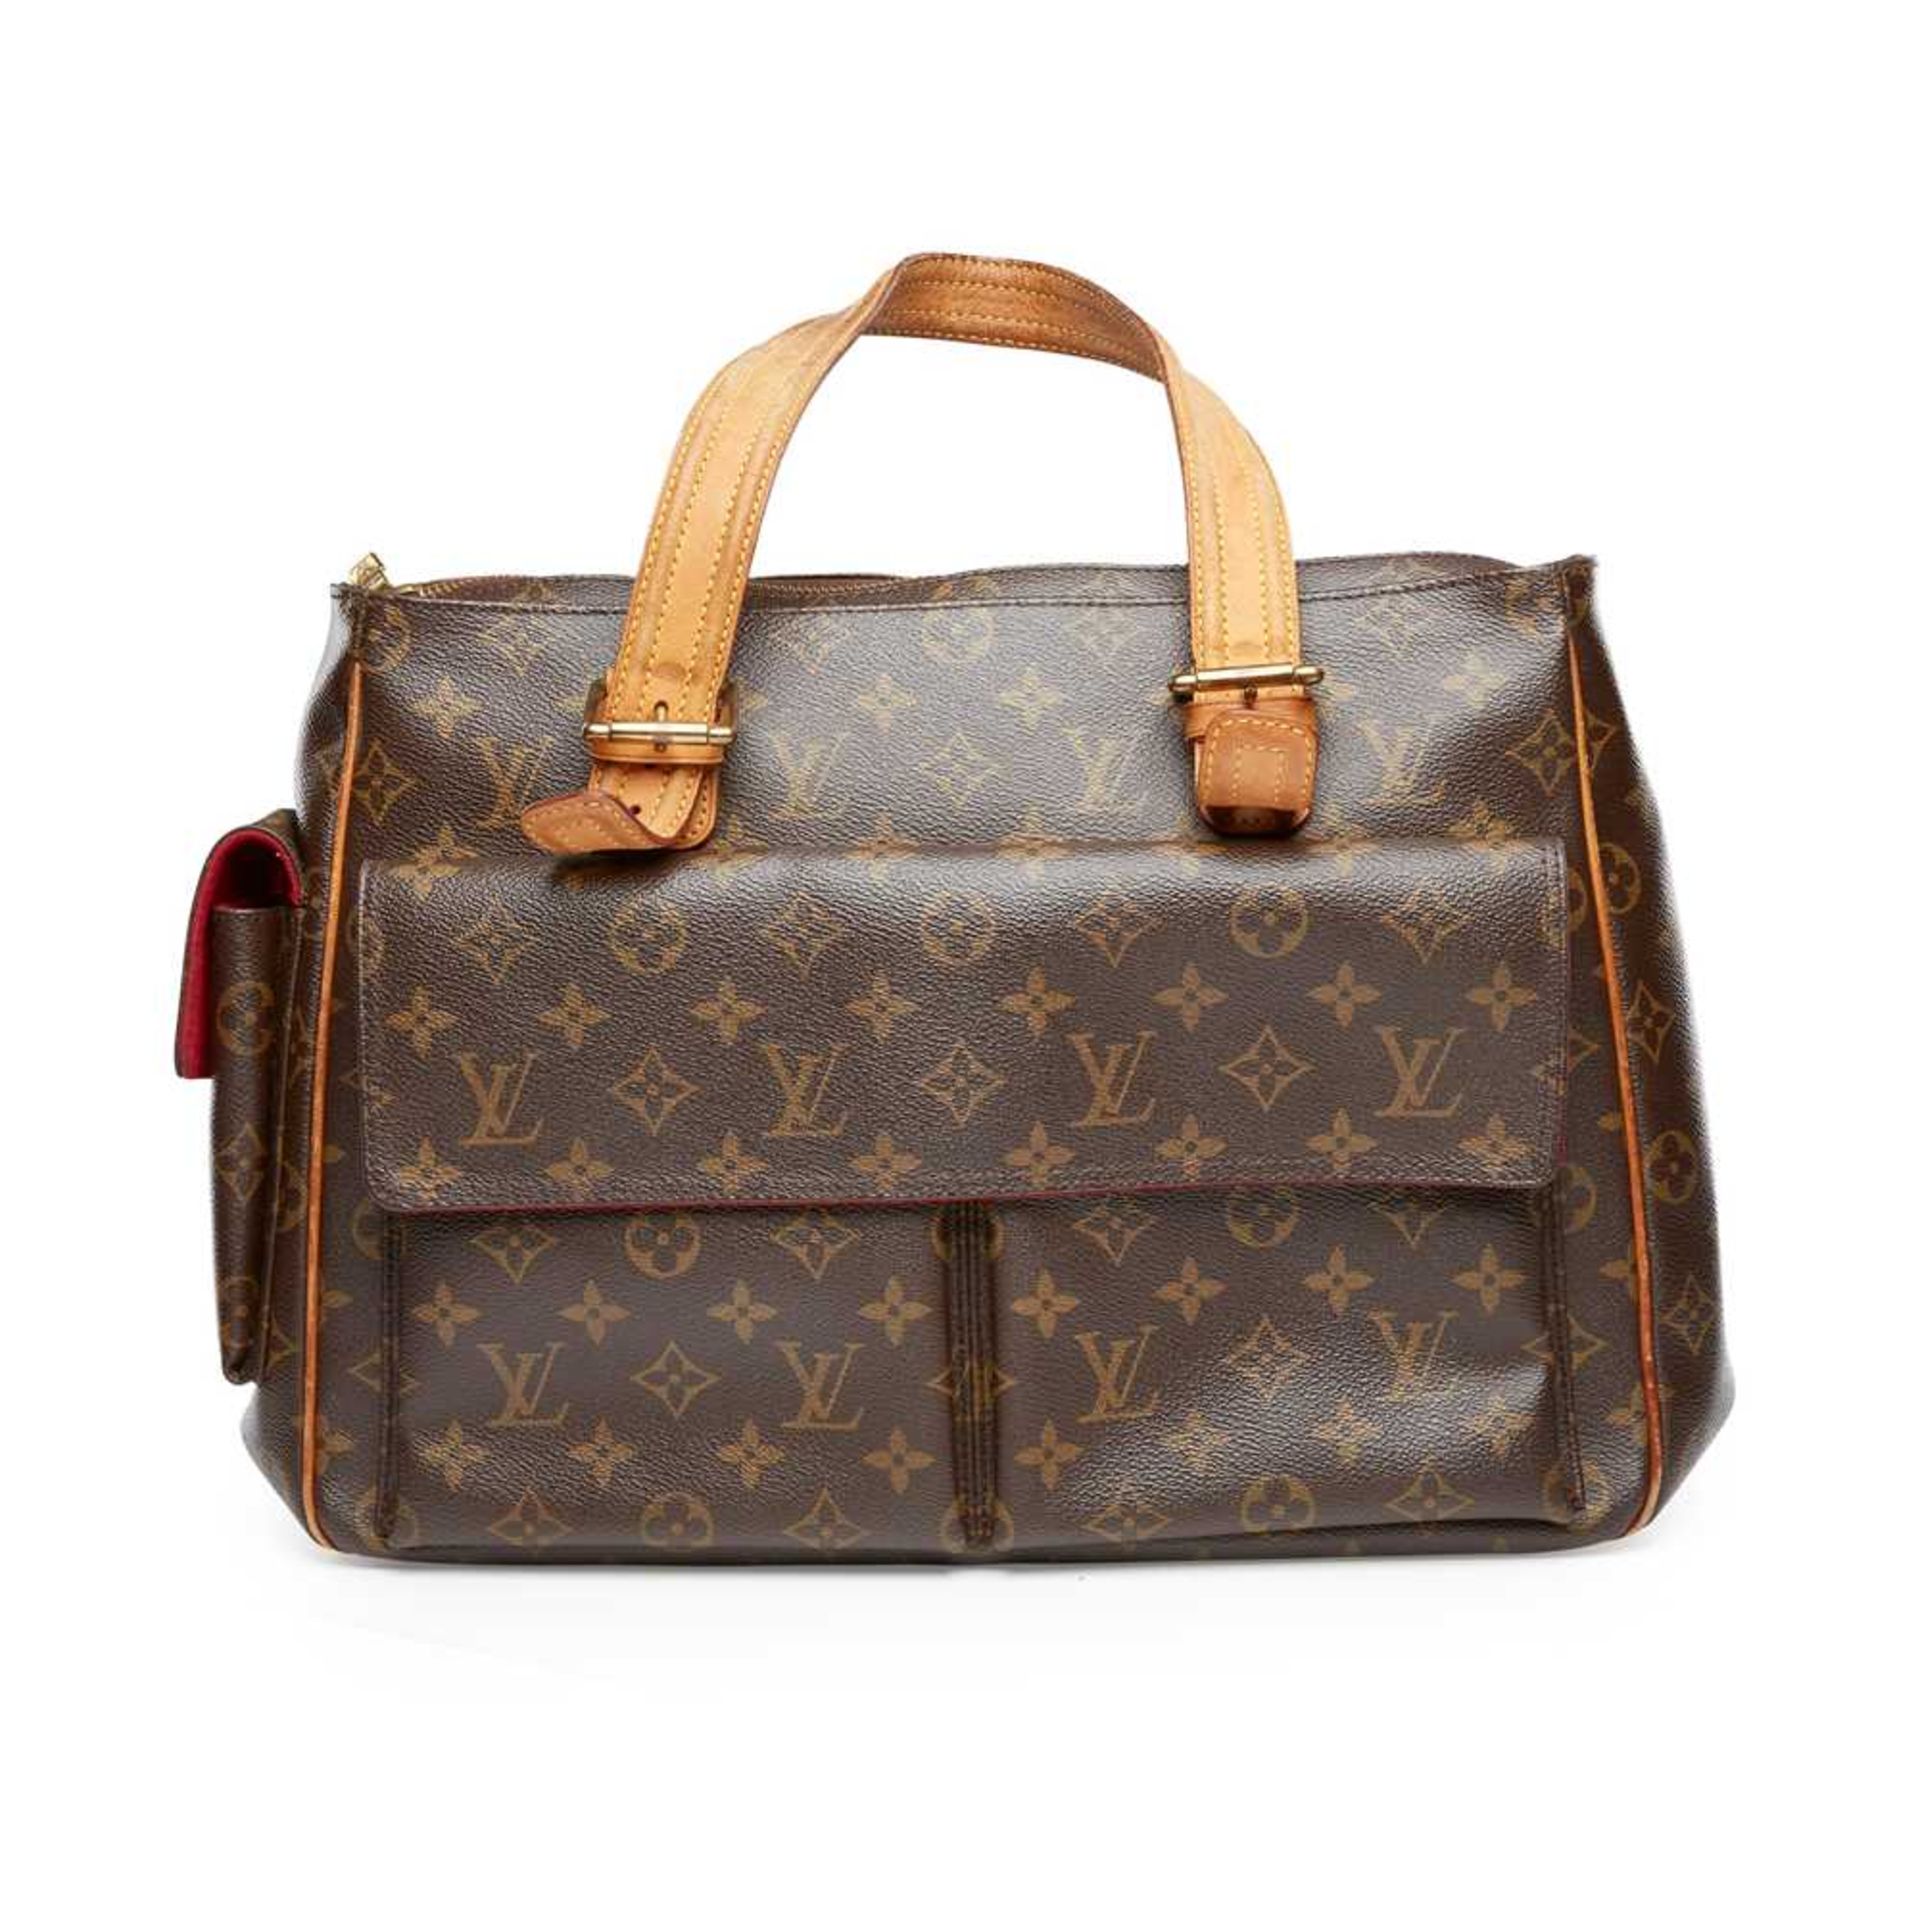 A Multipli Cite GM shoulder bag, Louis Vuitton